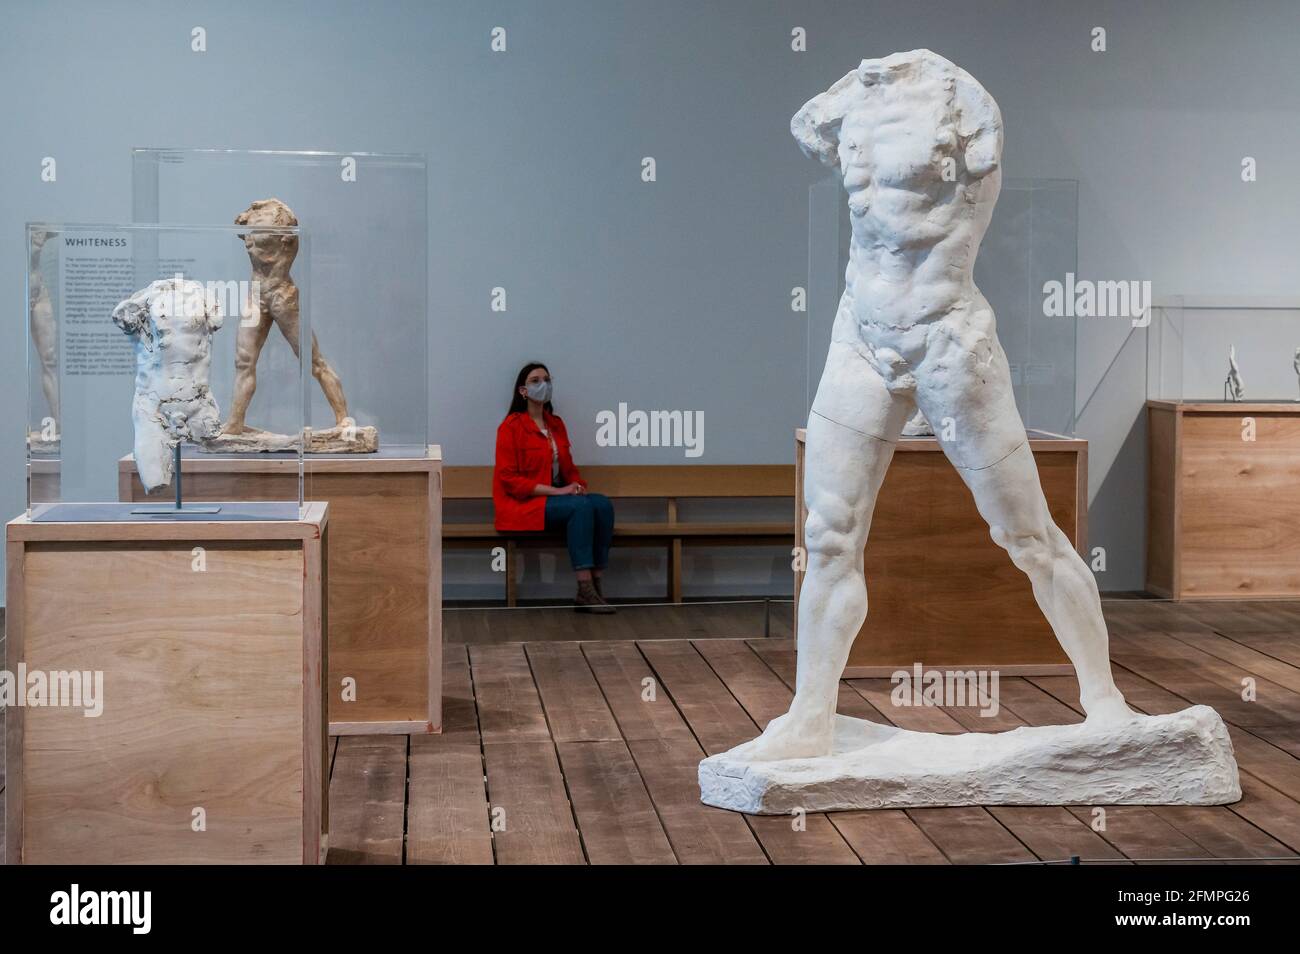 Londra, Regno Unito. 11 Maggio 2021. L'EY Exhibition: La realizzazione di Rodin in anteprima al Tate Modern. La galleria riaprirà, dopo l'ultimo covid lockdown, con questa nuova mostra delle opere di Aguste Rodin (1840-1917). Mostra come ha infranto le regole della scultura classica per creare un'immagine diversa del corpo umano, 'irraendo le rotture, le complessità e le incertezze dell'età moderna'. Con oltre 200 opere, la mostra è in parte frutto di una collaborazione unica con il Musée Rodin. Credit: Guy Bell/Alamy Live News Foto Stock